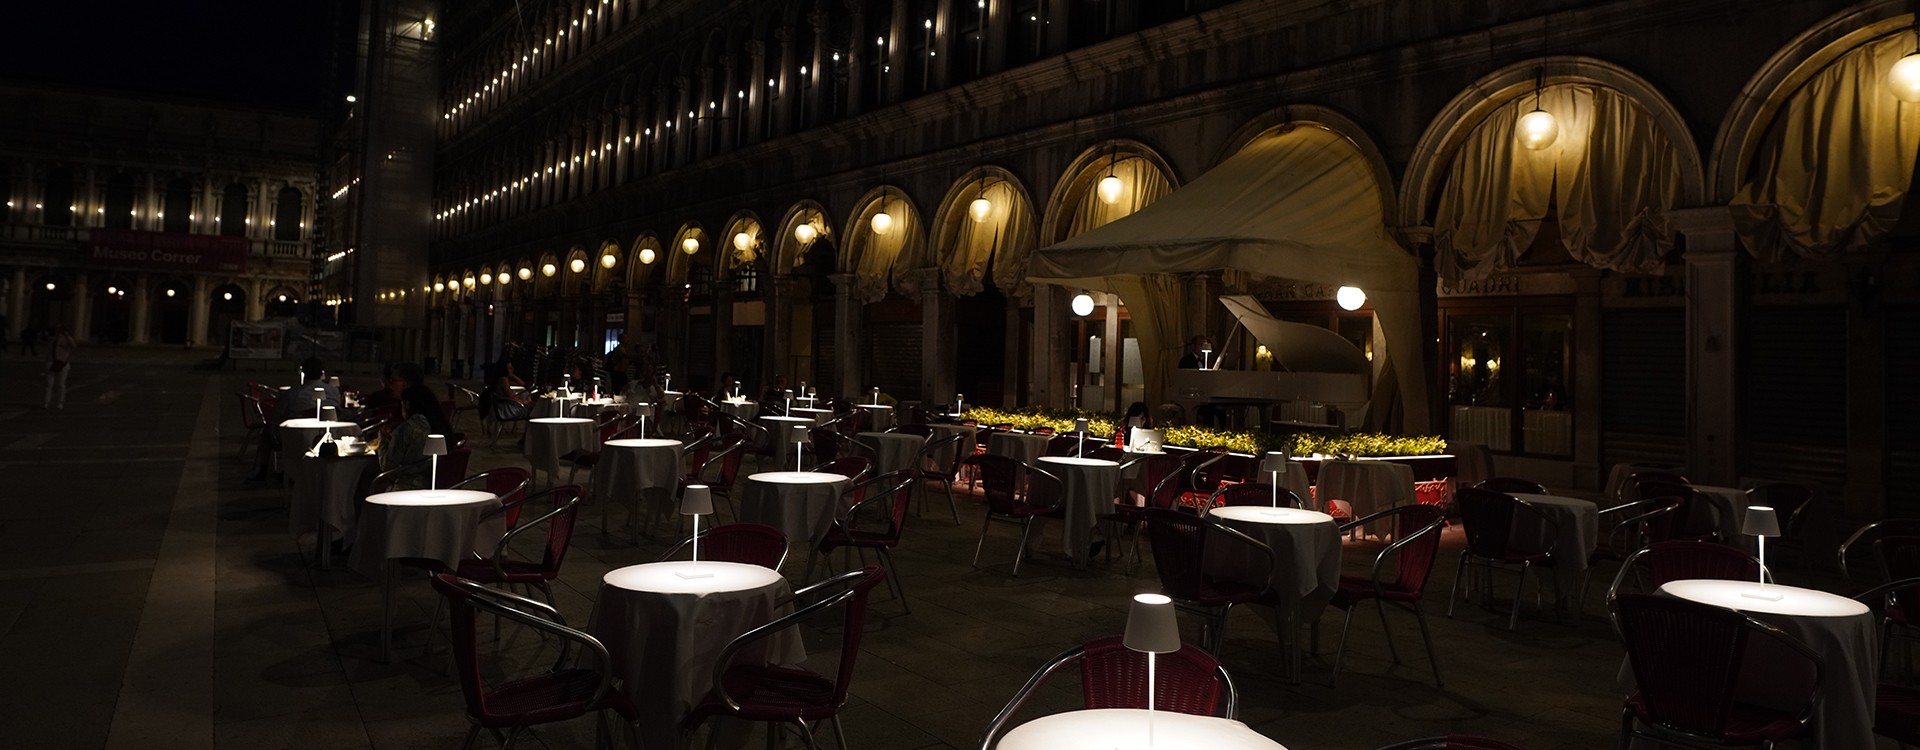 ZAFFERANO LAMPES-A-PORTER ILLUMINATE THE ITALIAN FINE DINING